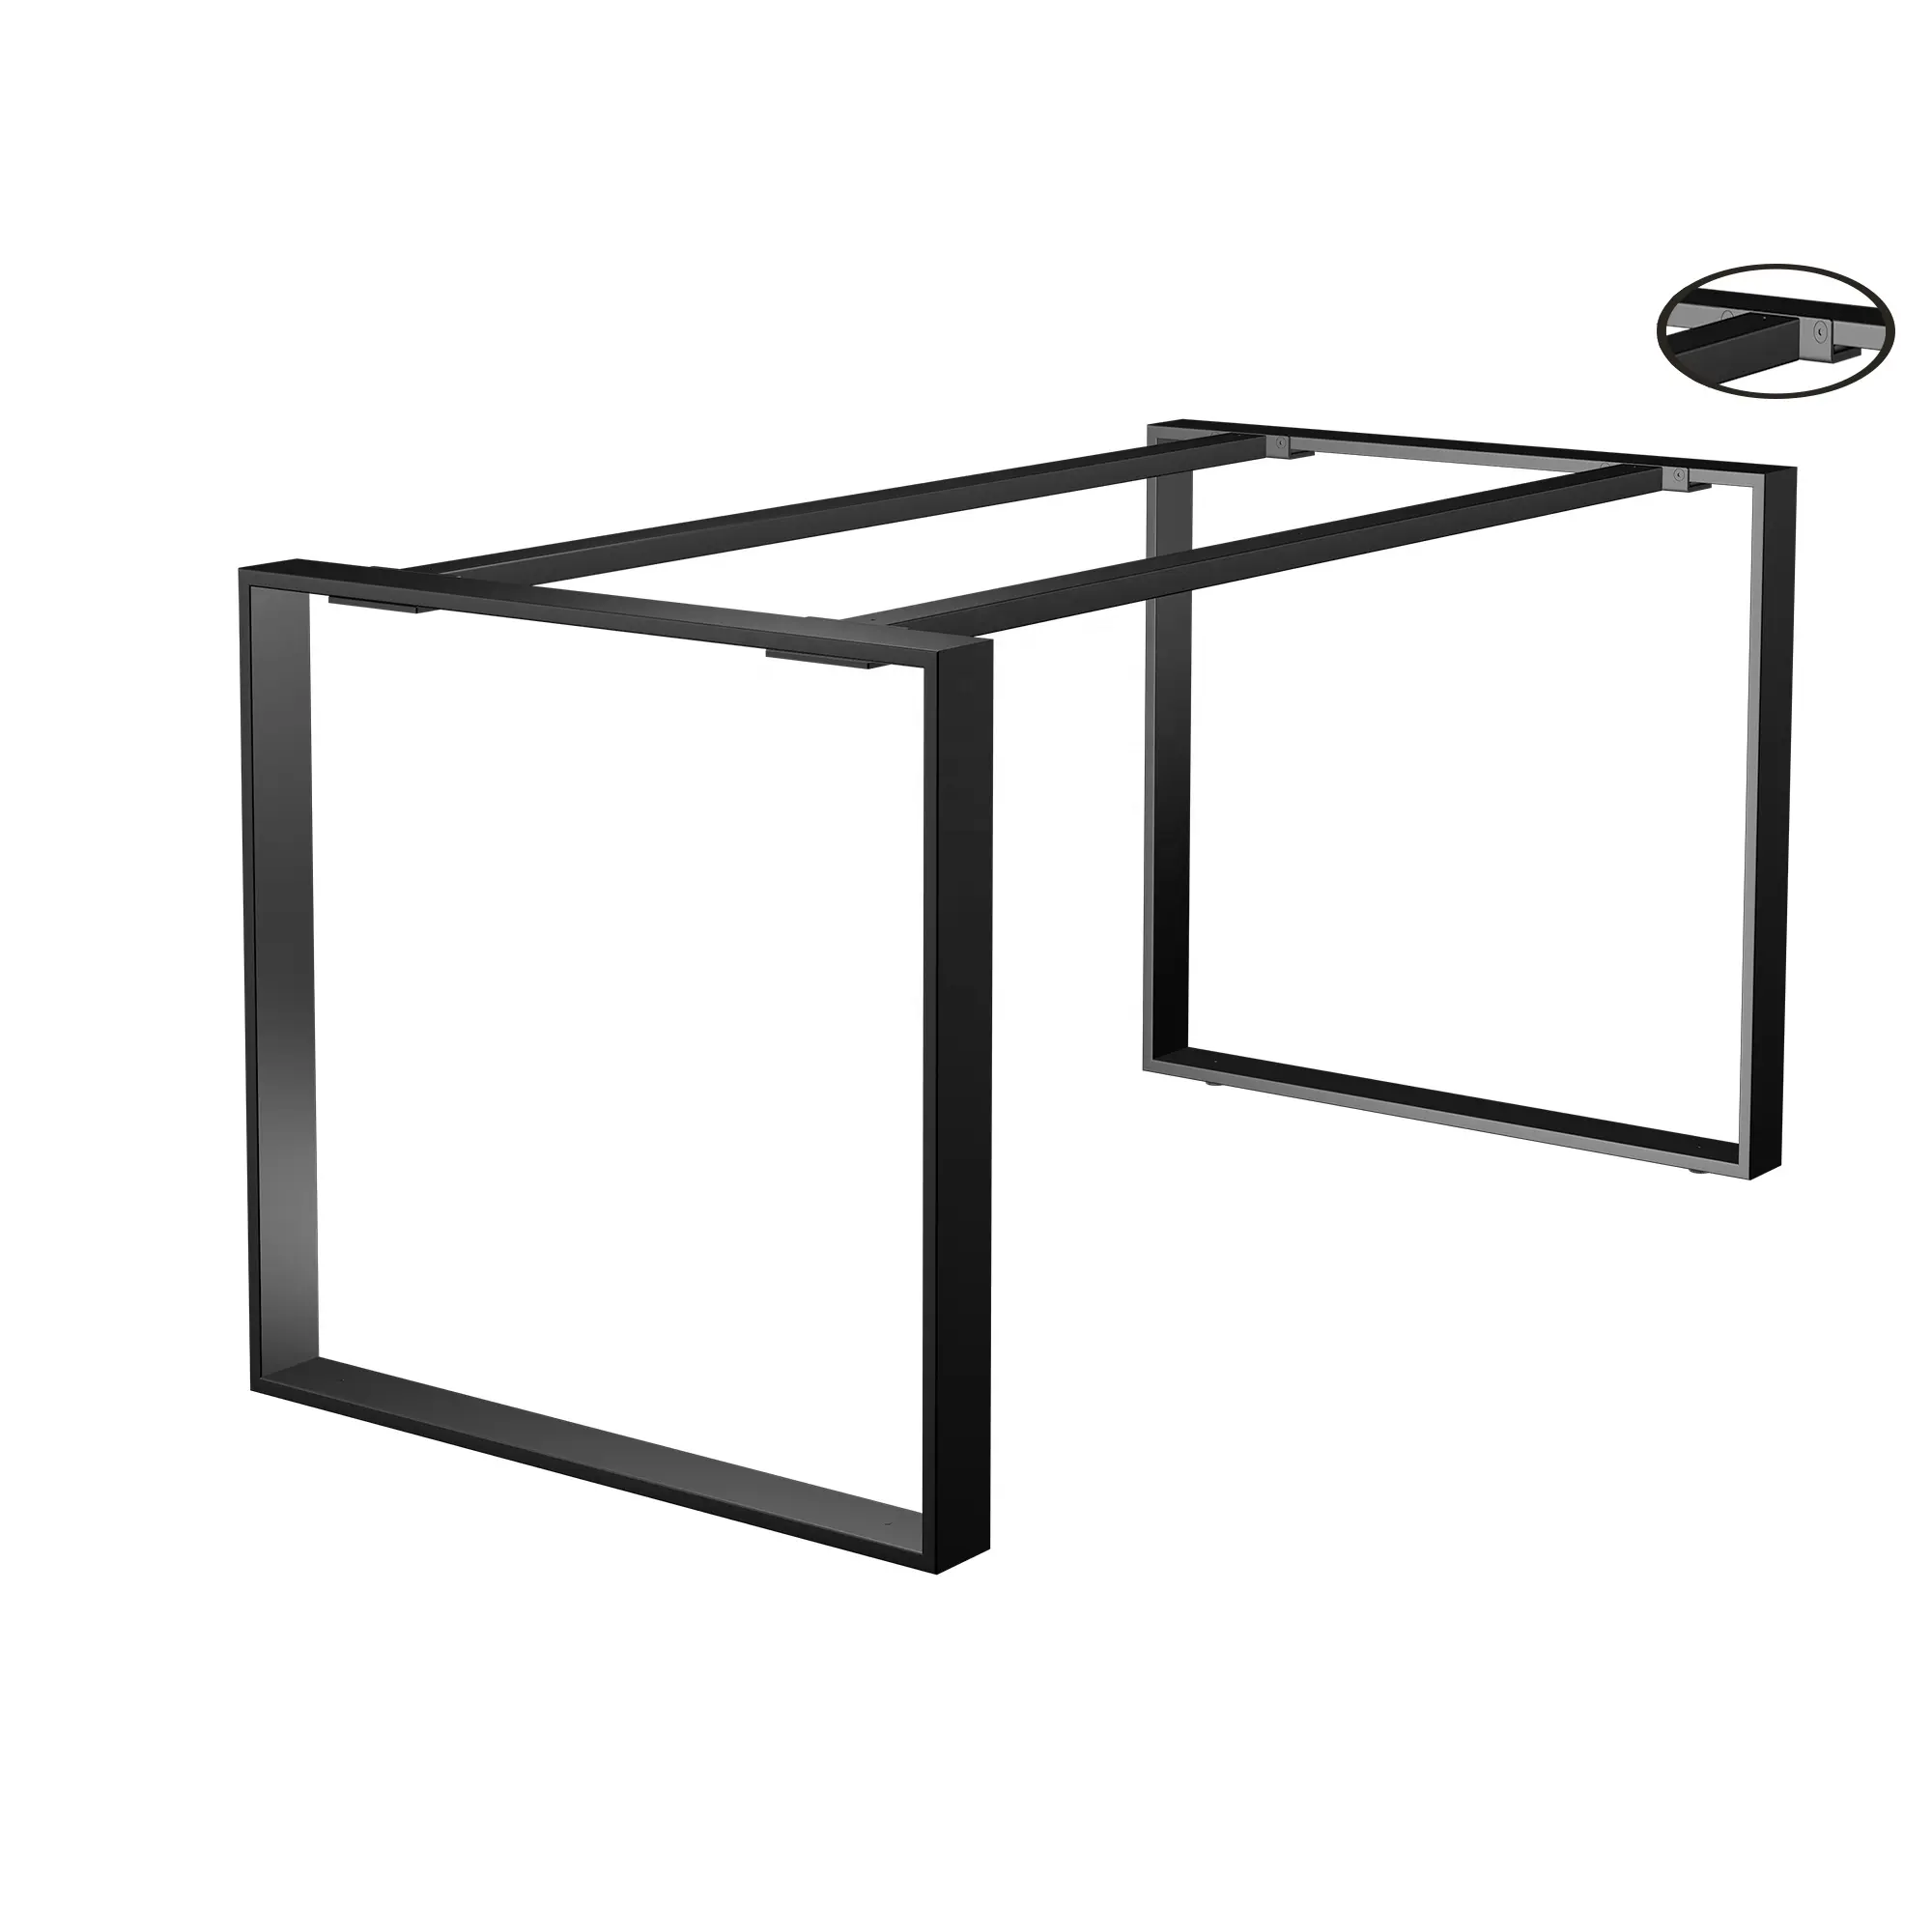 Pied de table en fonte moderne personnalisé industriel en métal carré de haute qualité pour table de bureau